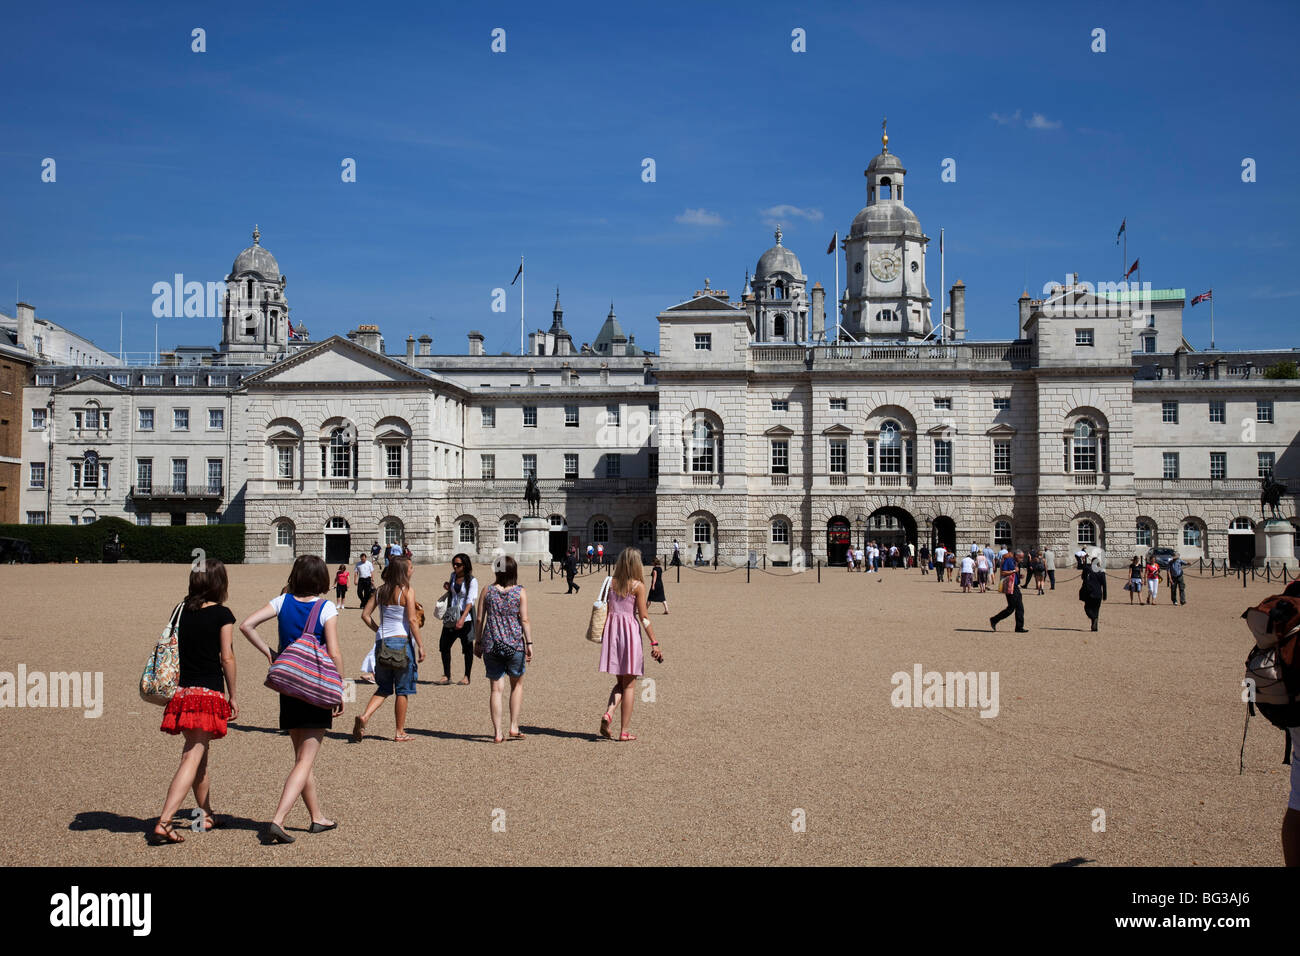 Les touristes à pied vers le vieux bâtiment de l'Amirauté sur Horse Guards Parade à St James', le centre de Londres. Banque D'Images